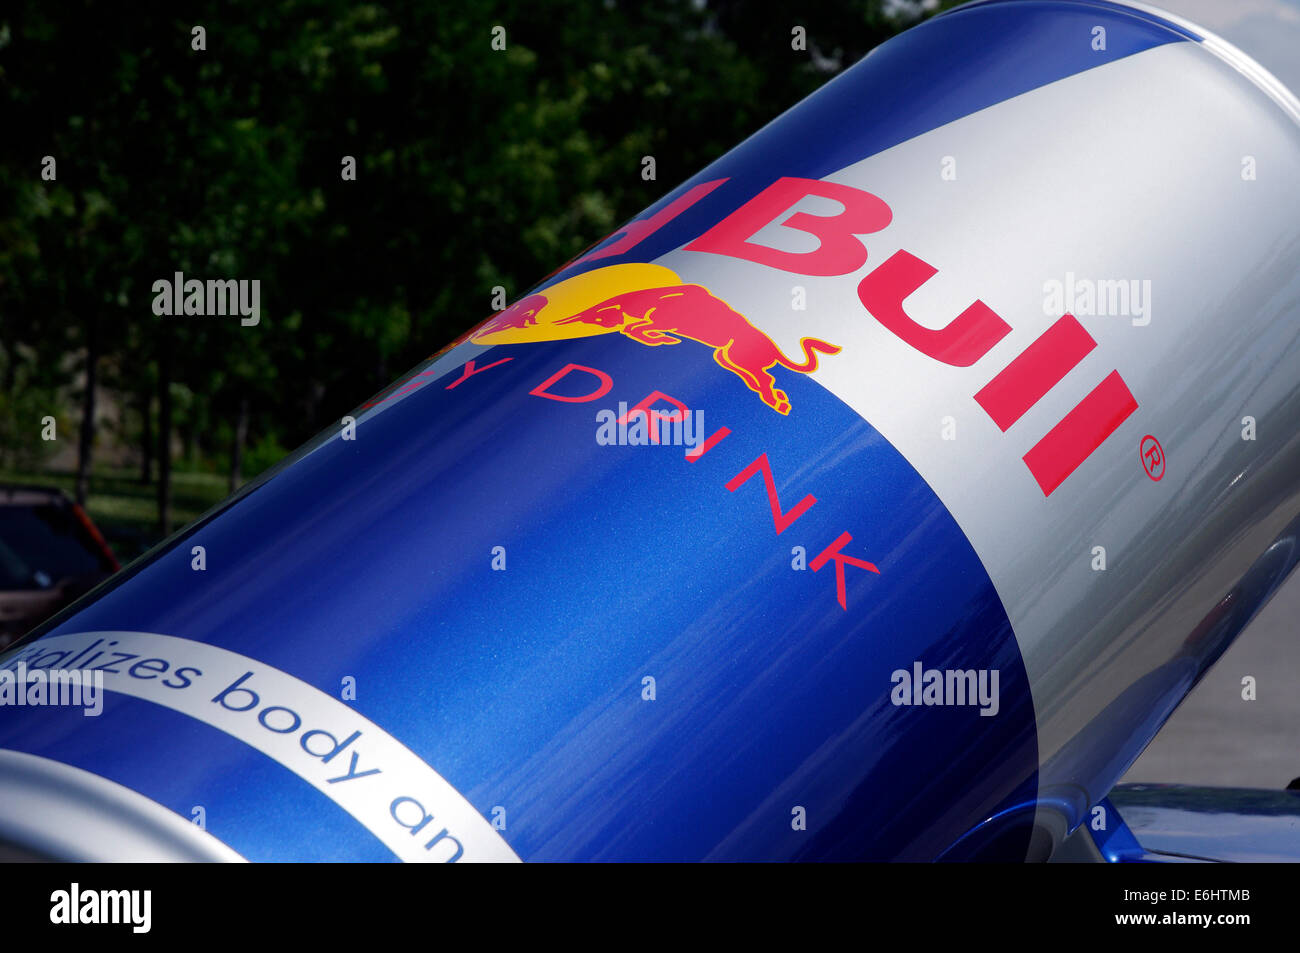 Red Bull Mini Stockfoto